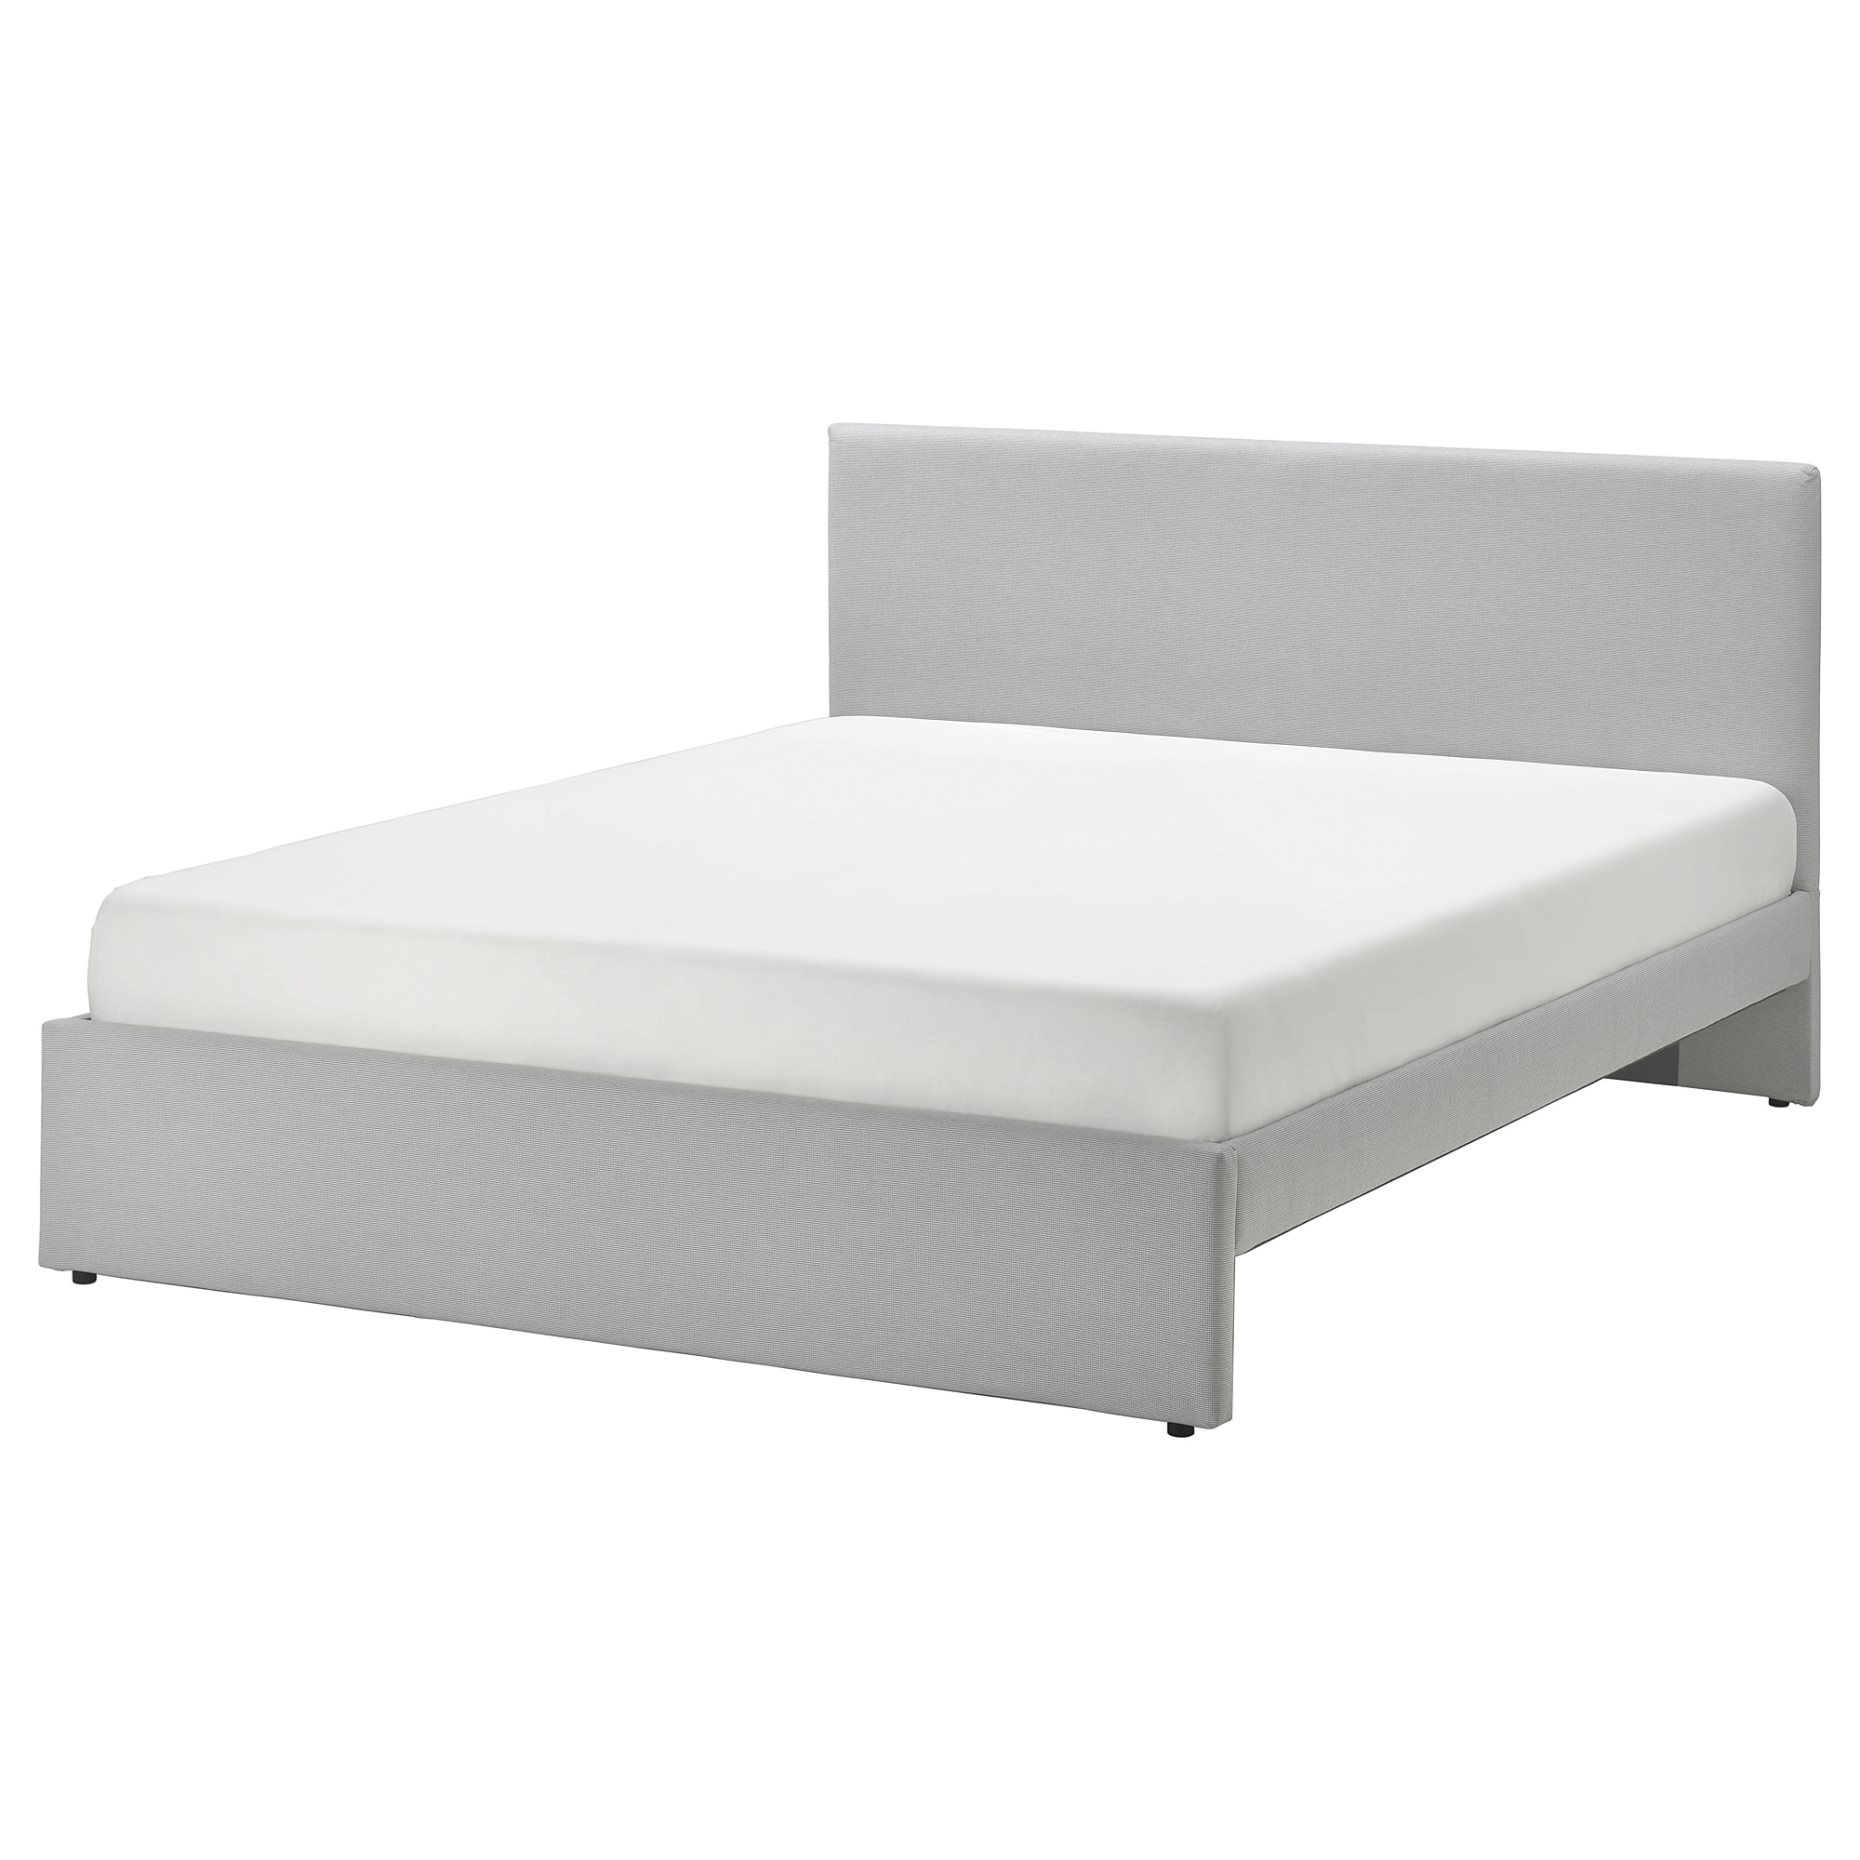 GLADSTAD, κρεβάτι με επένδυση, 160x200 cm, 804.904.53